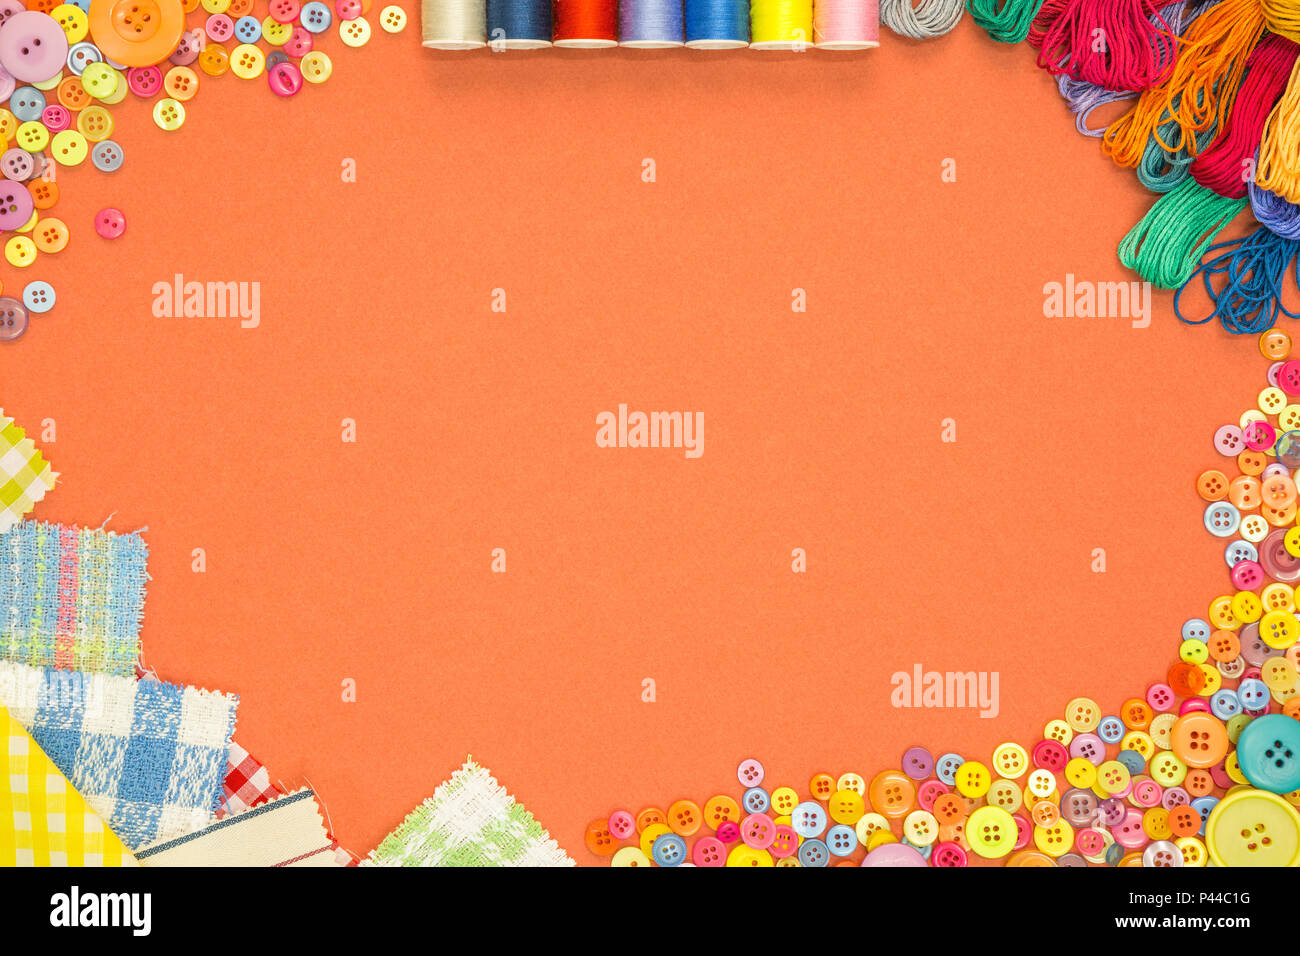 Artes y manualidades con material de fondo y botones en un papel con textura de fondo naranja con copia en blanco el espacio. Foto de stock